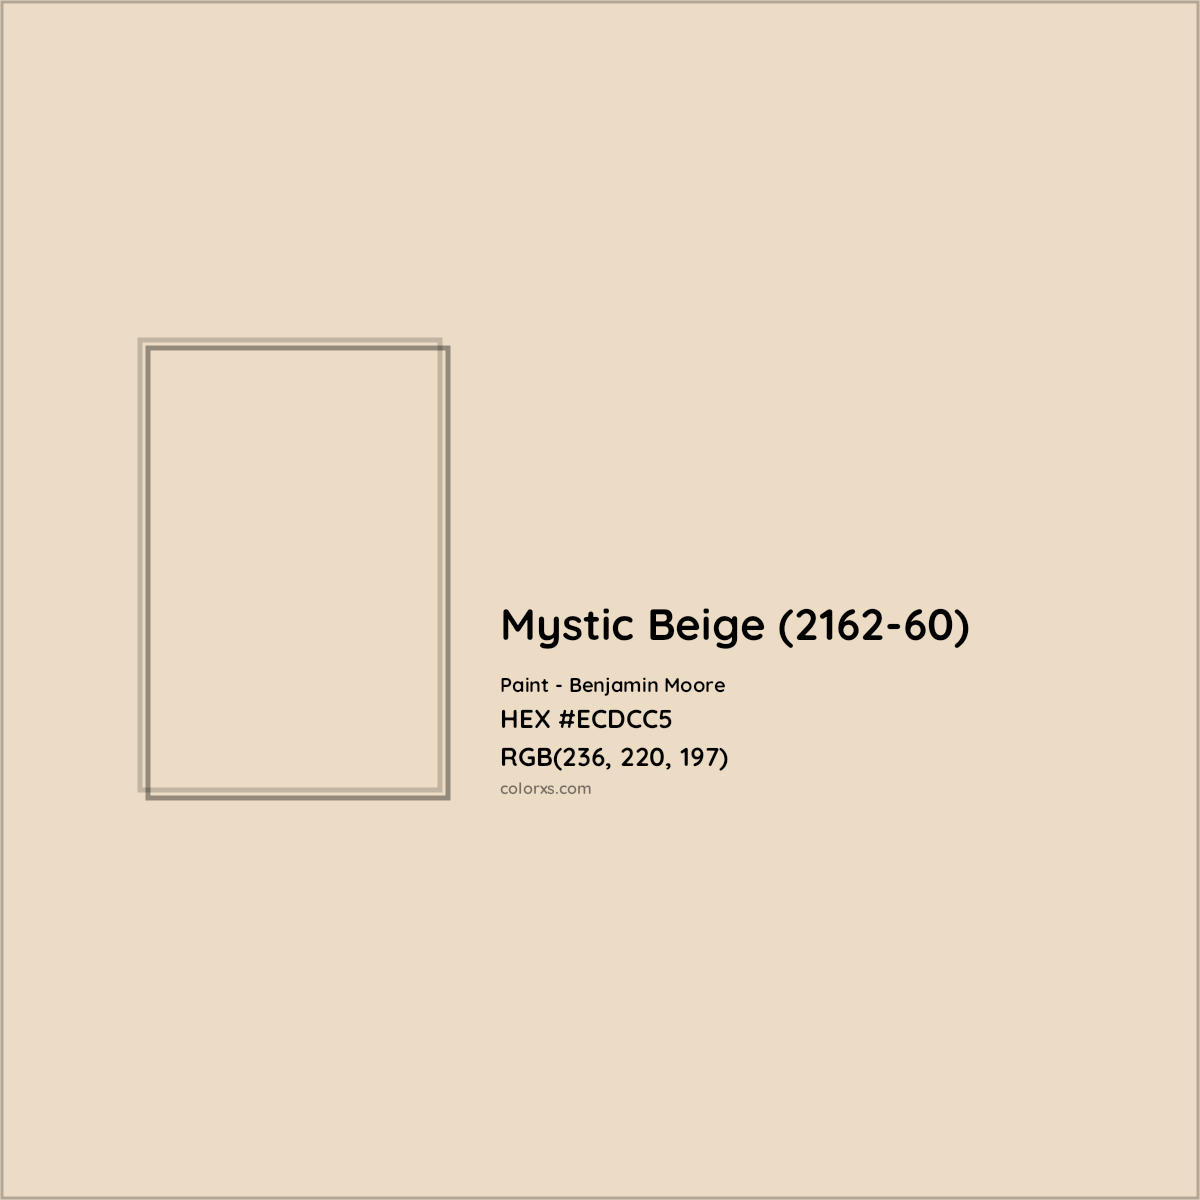 HEX #ECDCC5 Mystic Beige (2162-60) Paint Benjamin Moore - Color Code